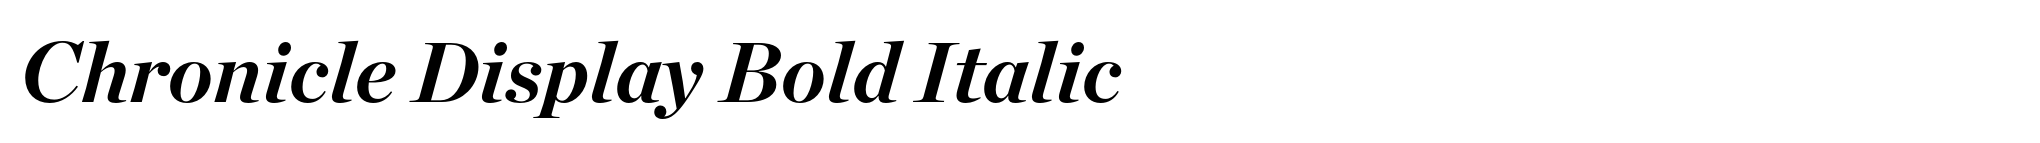 Chronicle Display Bold Italic image